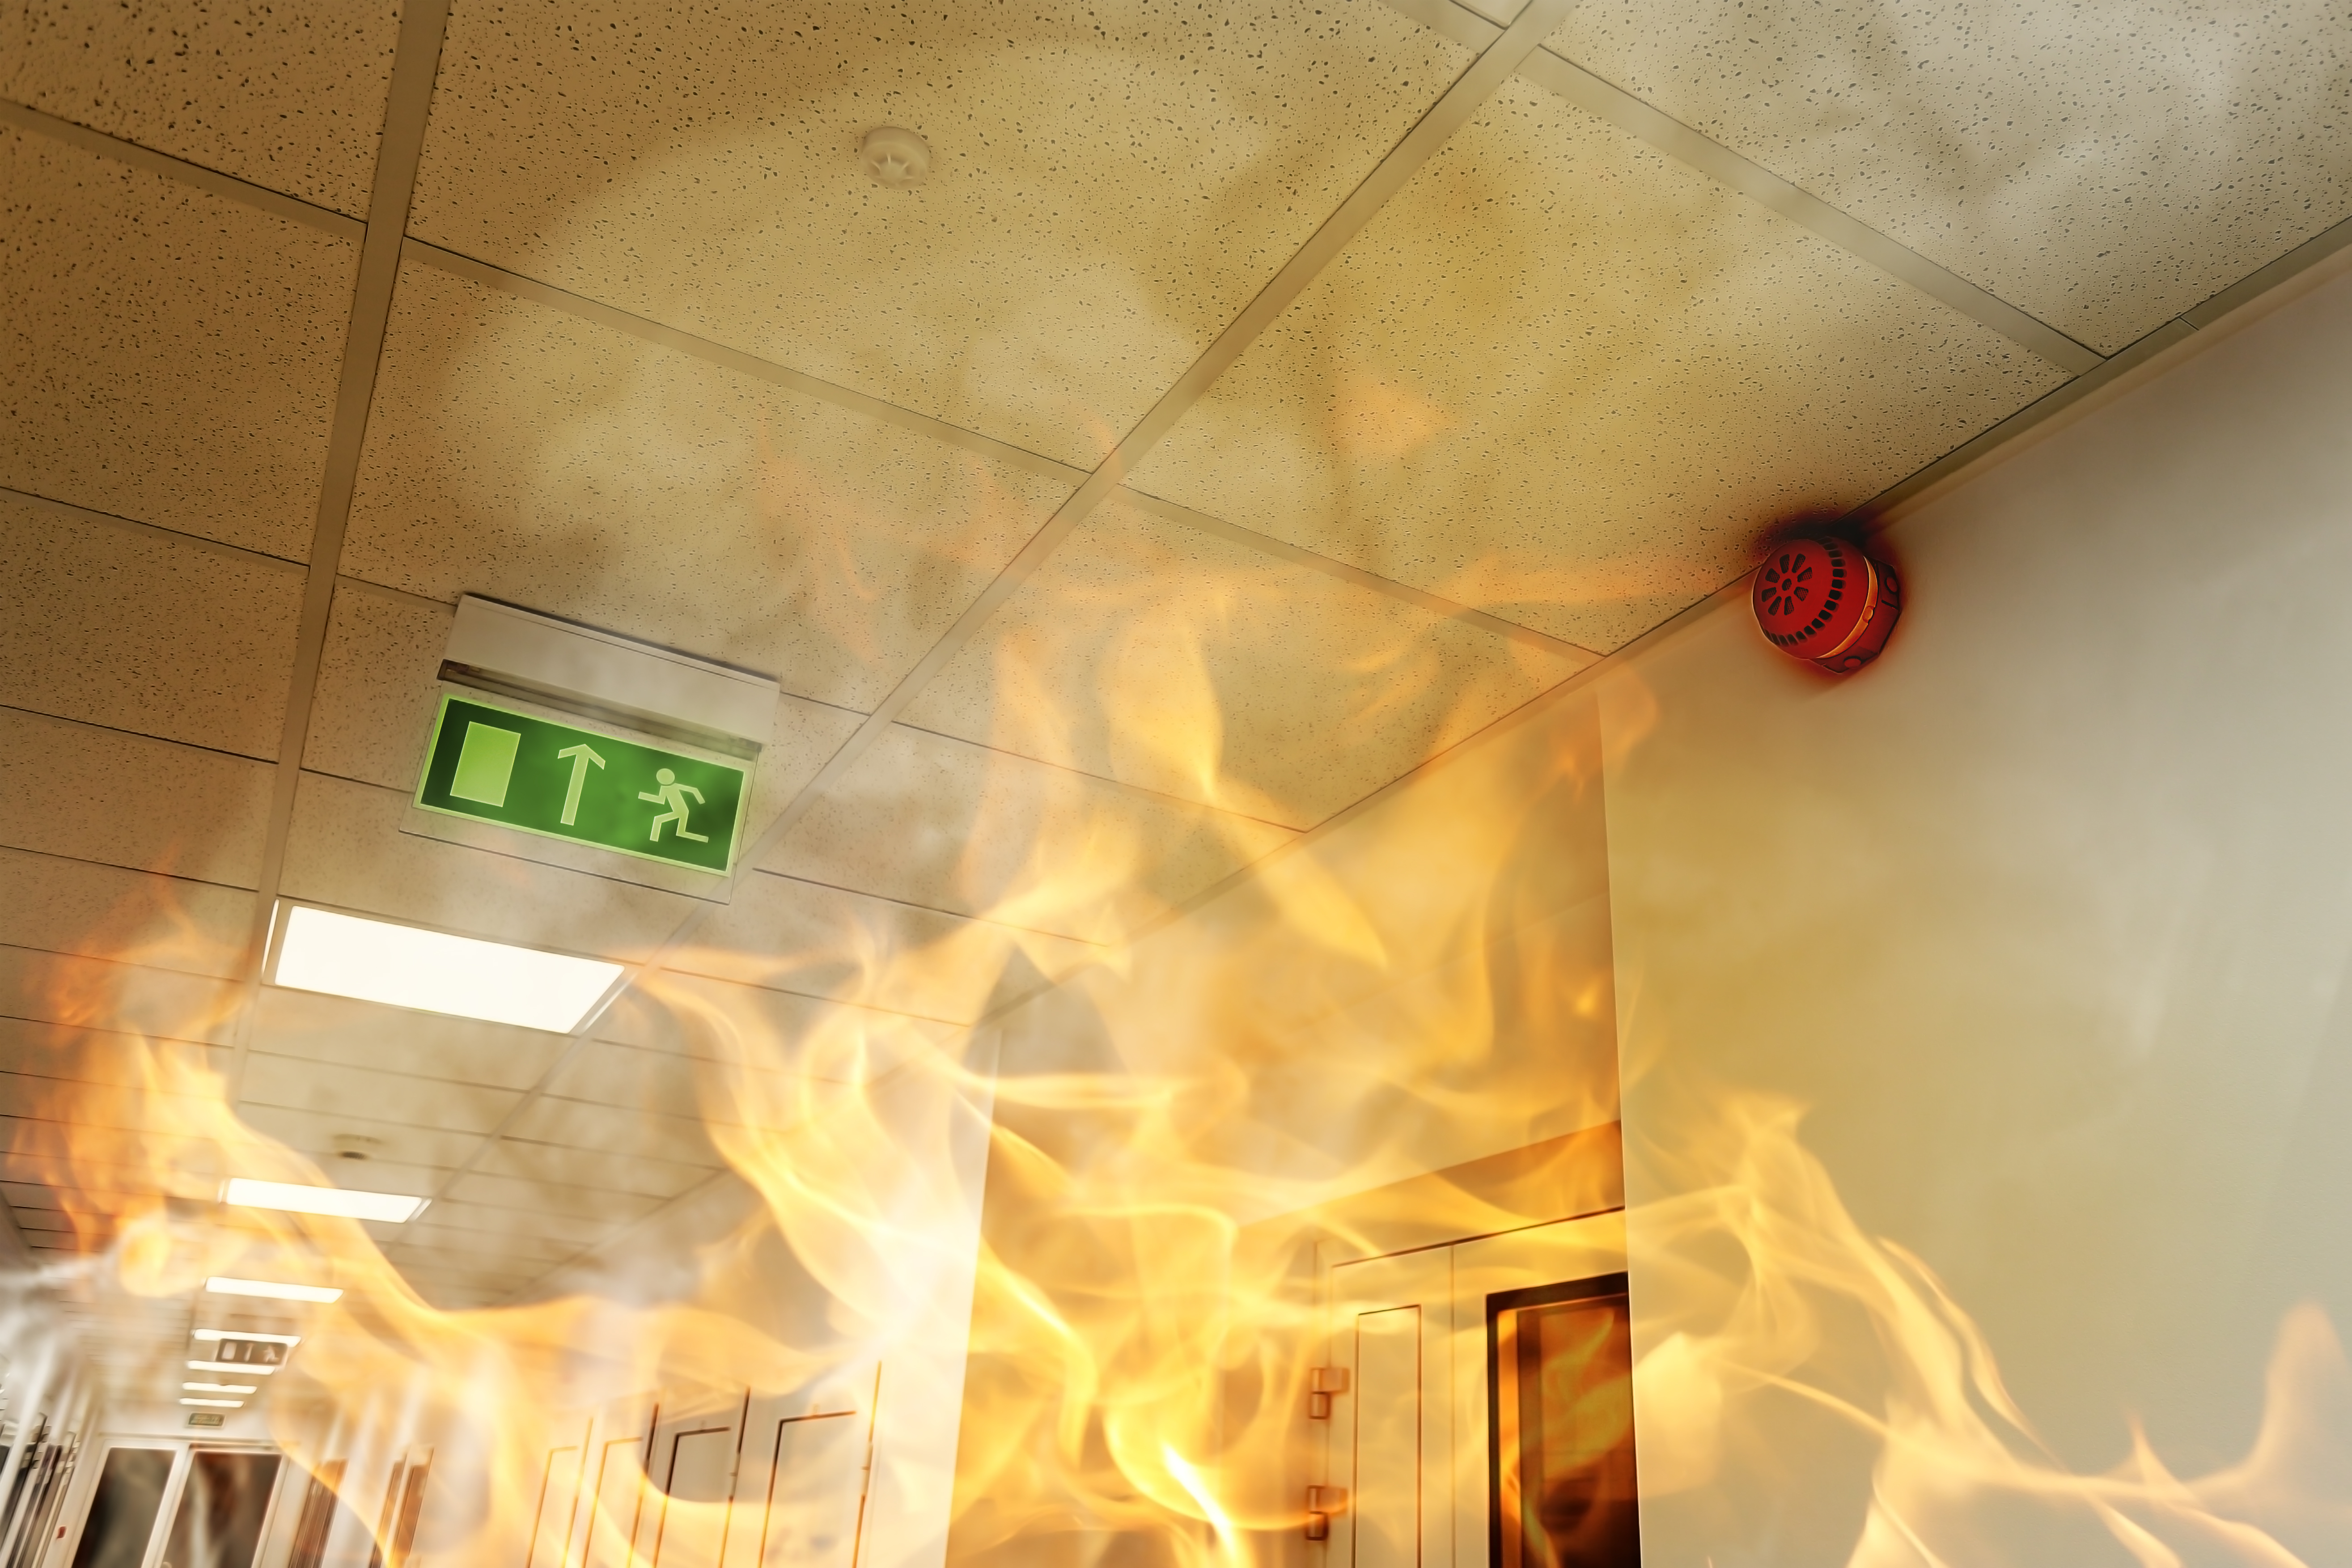 Na slici se nalazi hodnik koji je u plamenu. Na stropu je zeleni znak za izlaz u opasnosti i sustav za detekciju dima.